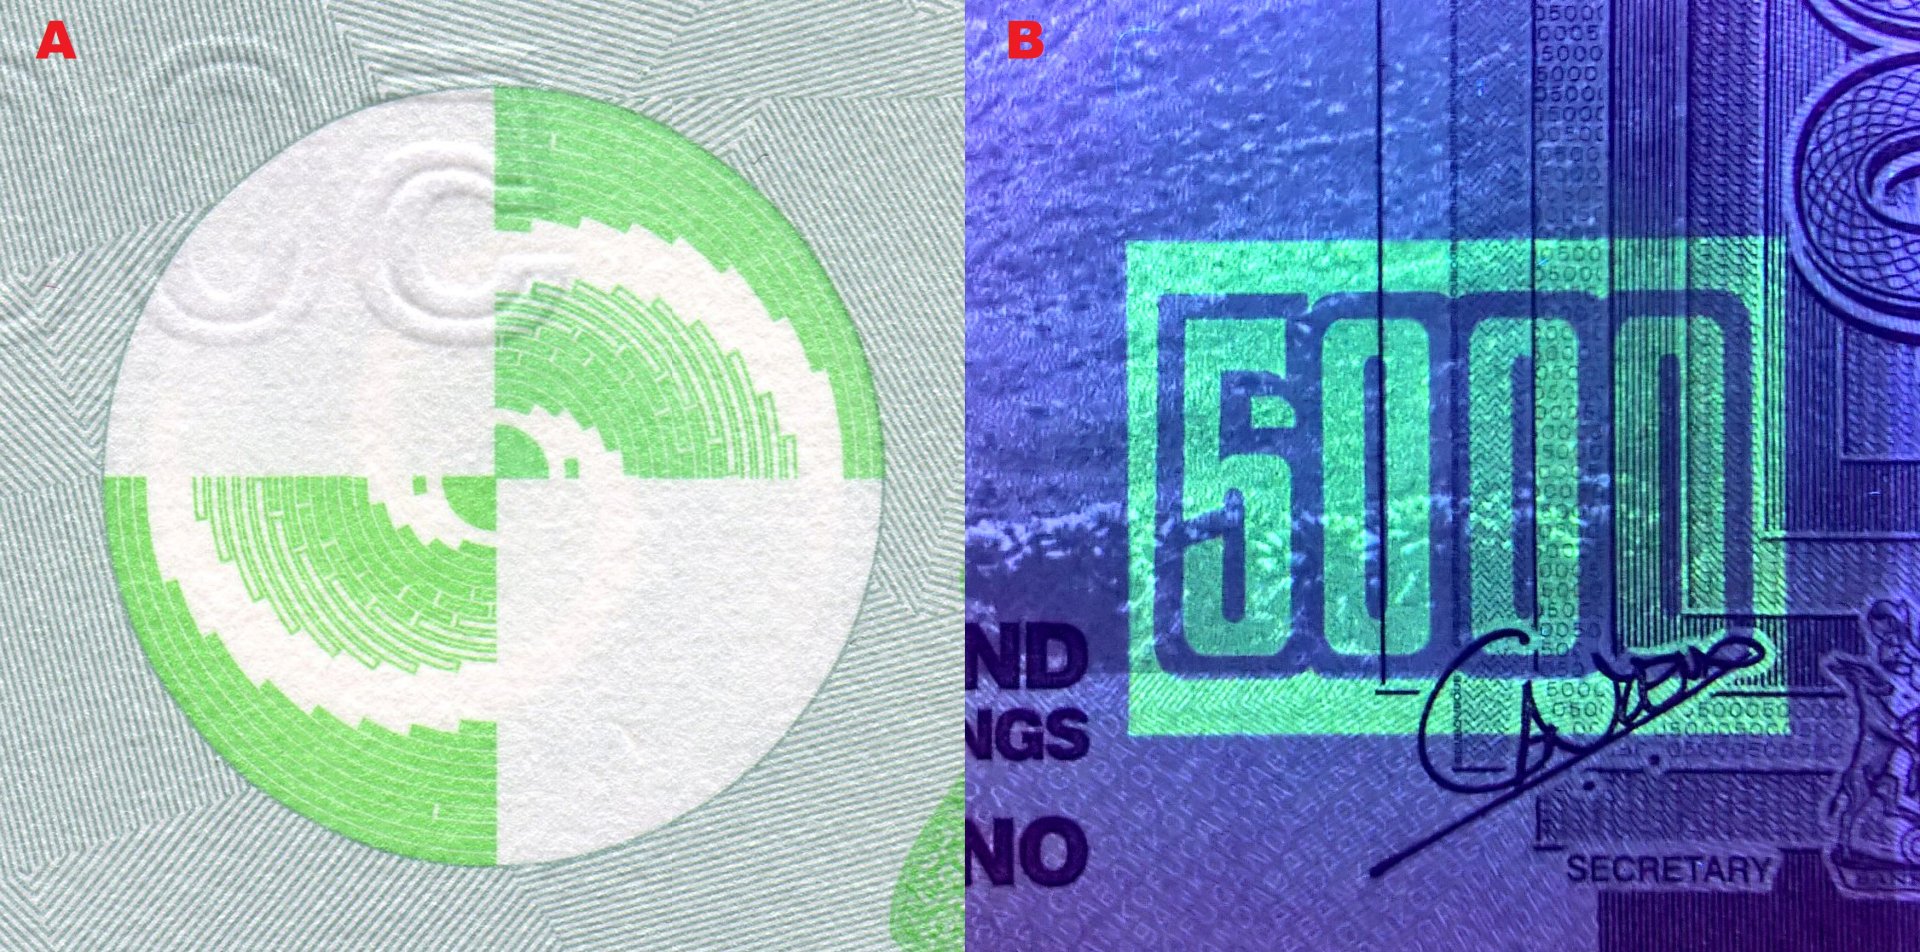 Obrázek 4 A) Soutisková značka ve tvaru tradičního košíkářského vzoru B) UV nominální pole na averzu bankovky